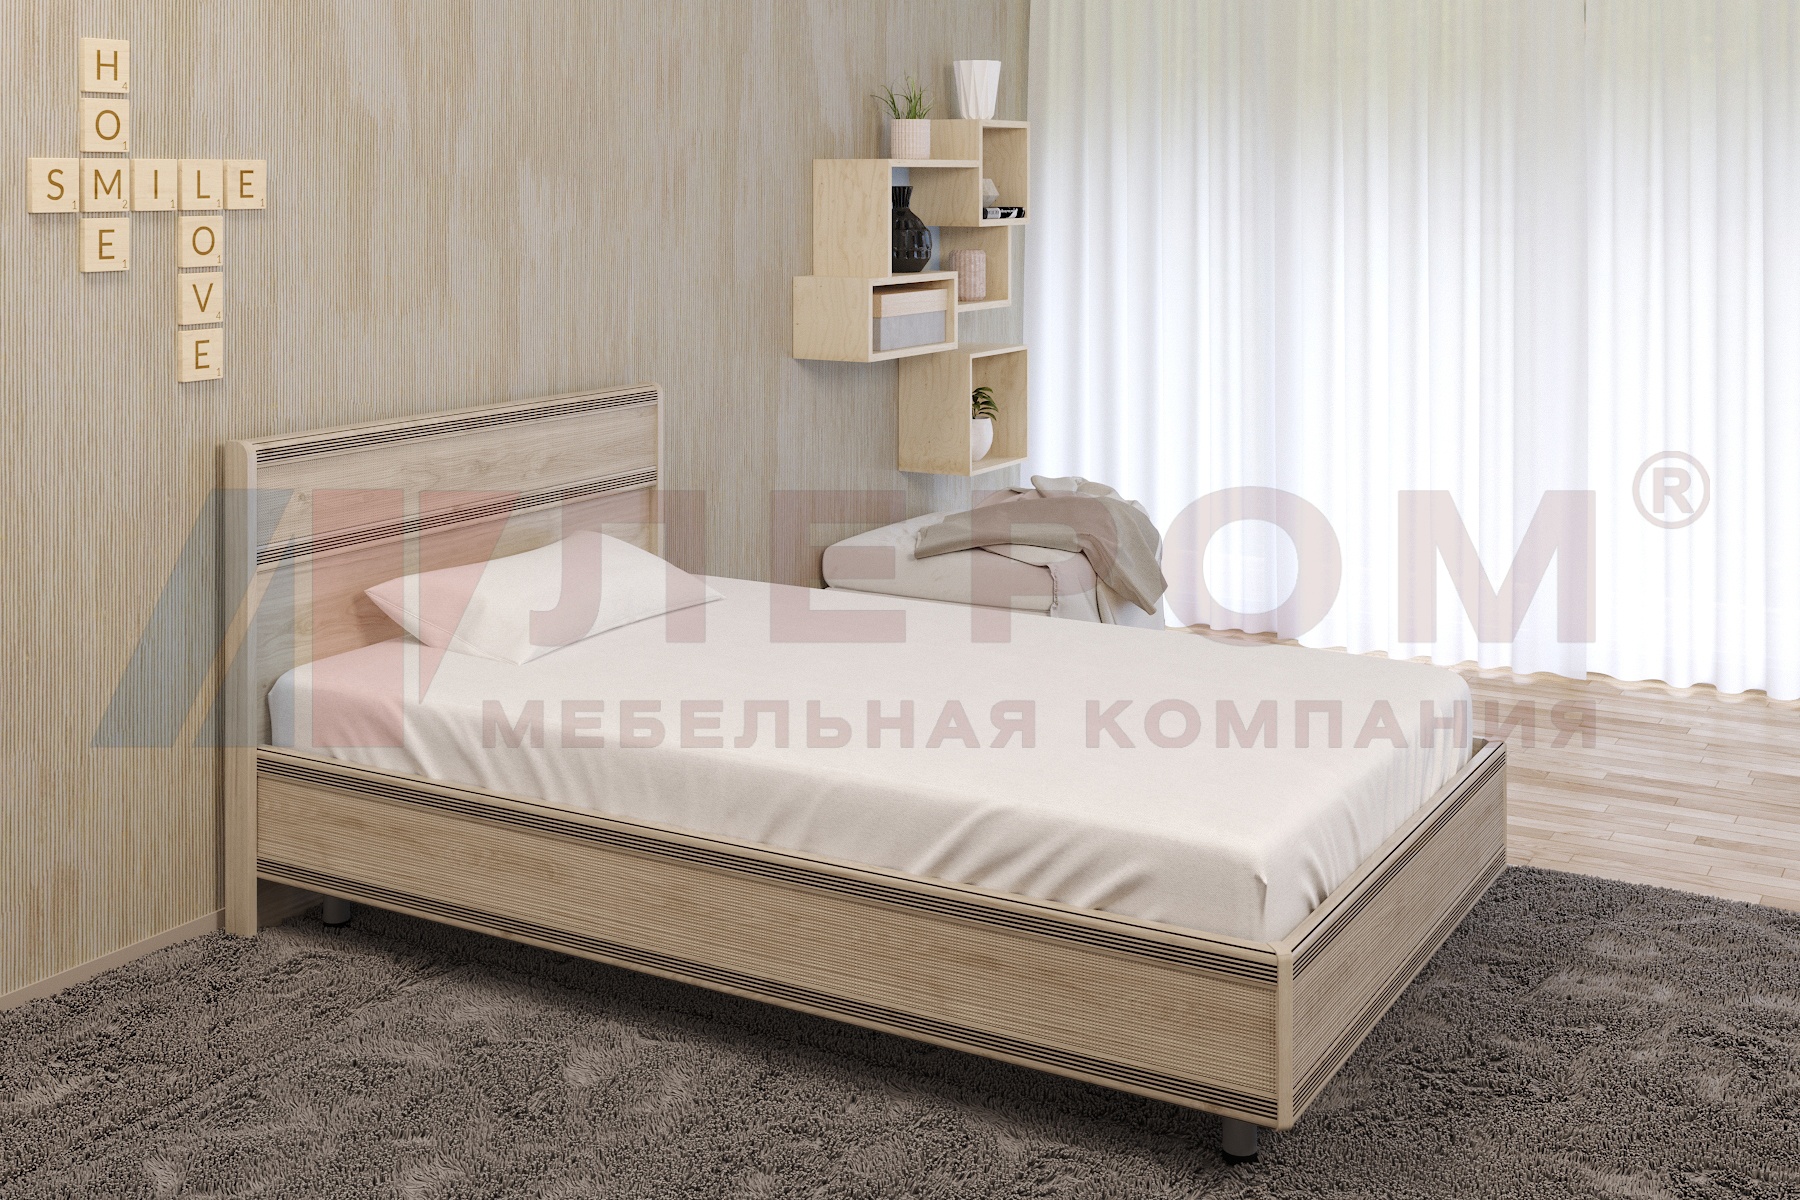 КР-2001 кровать (1,2*2,0)